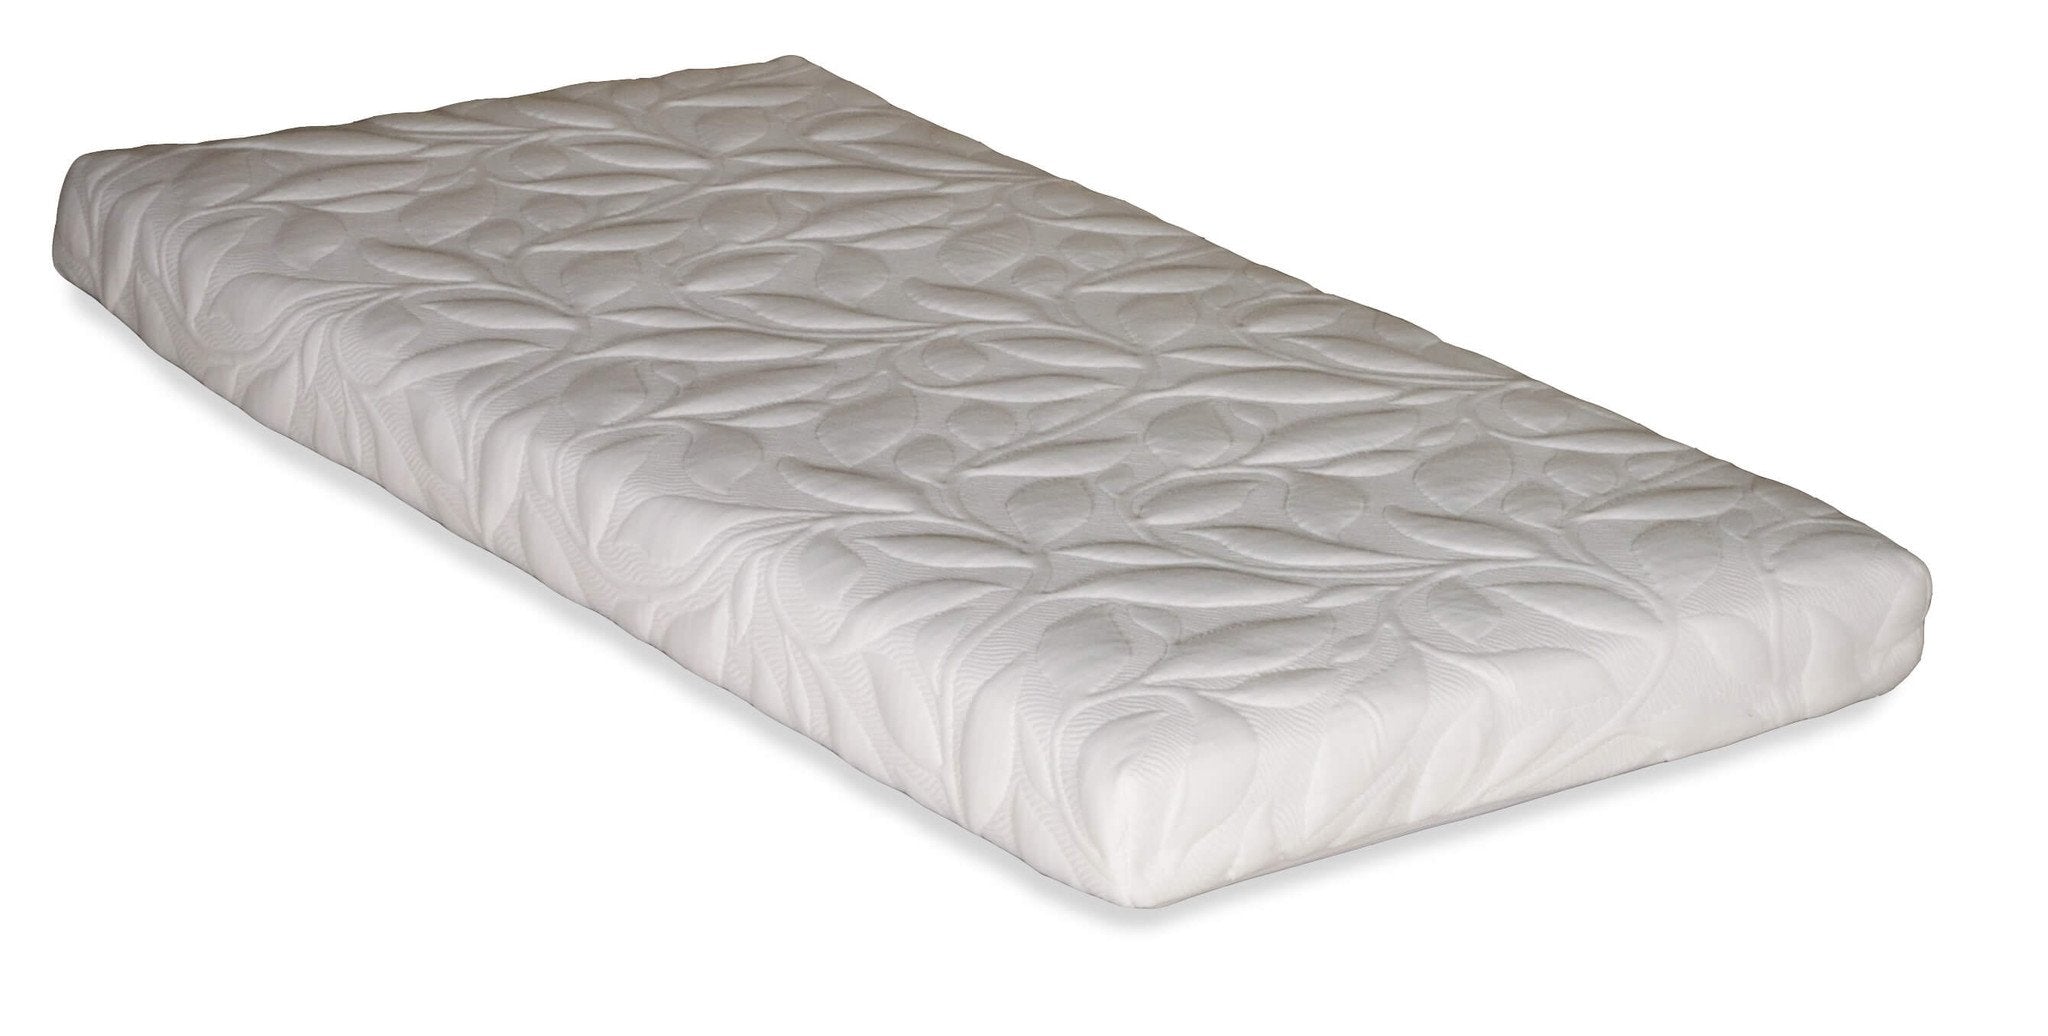 cot mattress fantastic furniture